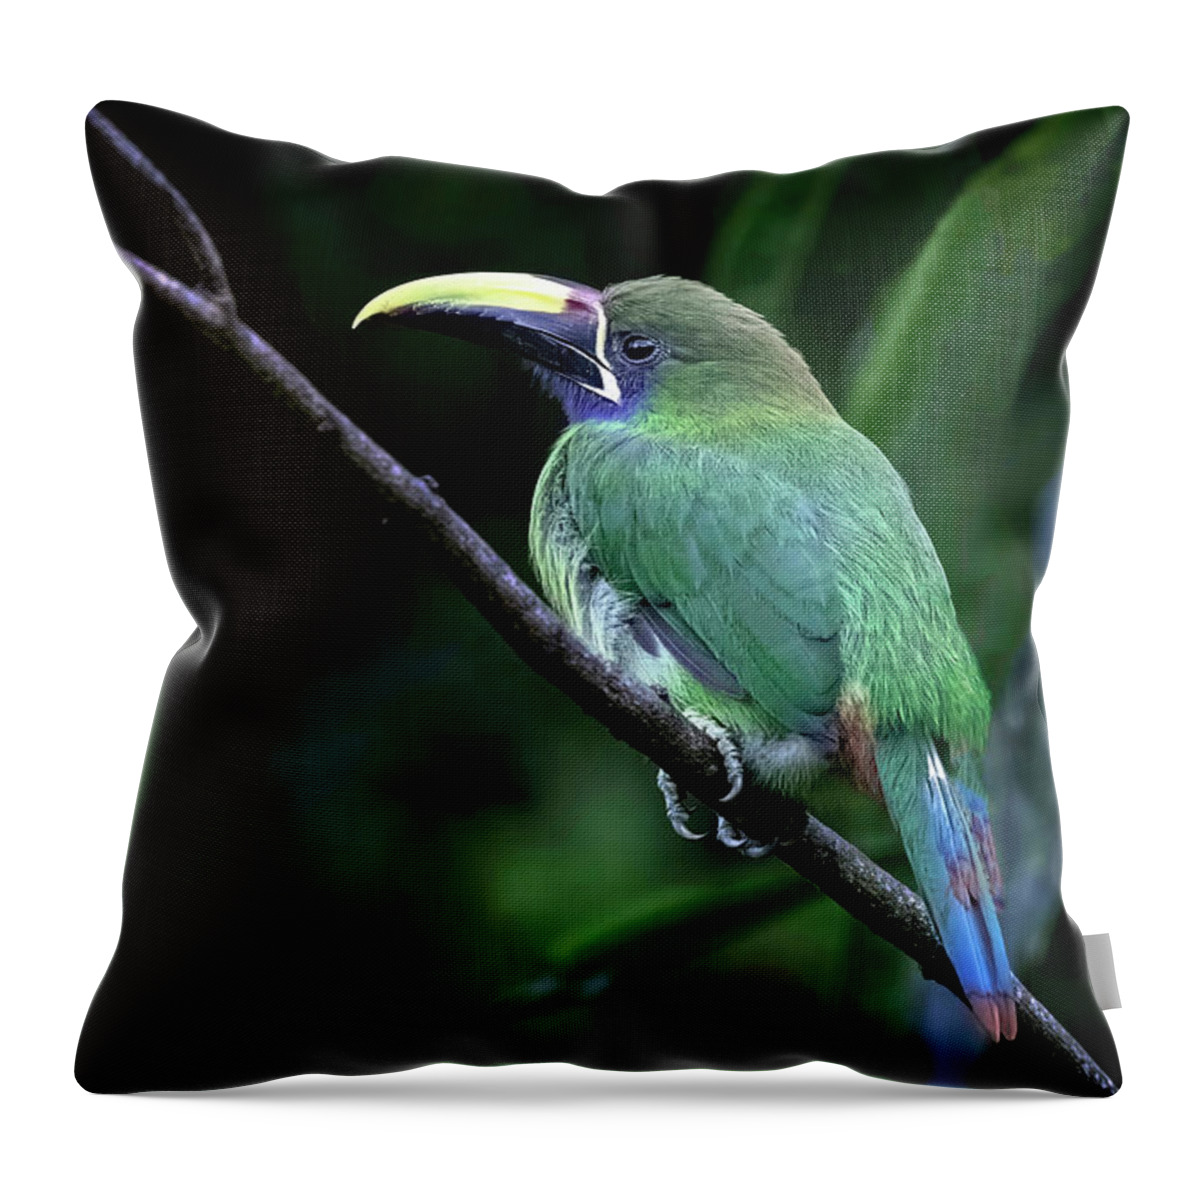 Gary Johnson. Emerald Toucanet Throw Pillow featuring the photograph Emerald Toucanet by Gary Johnson